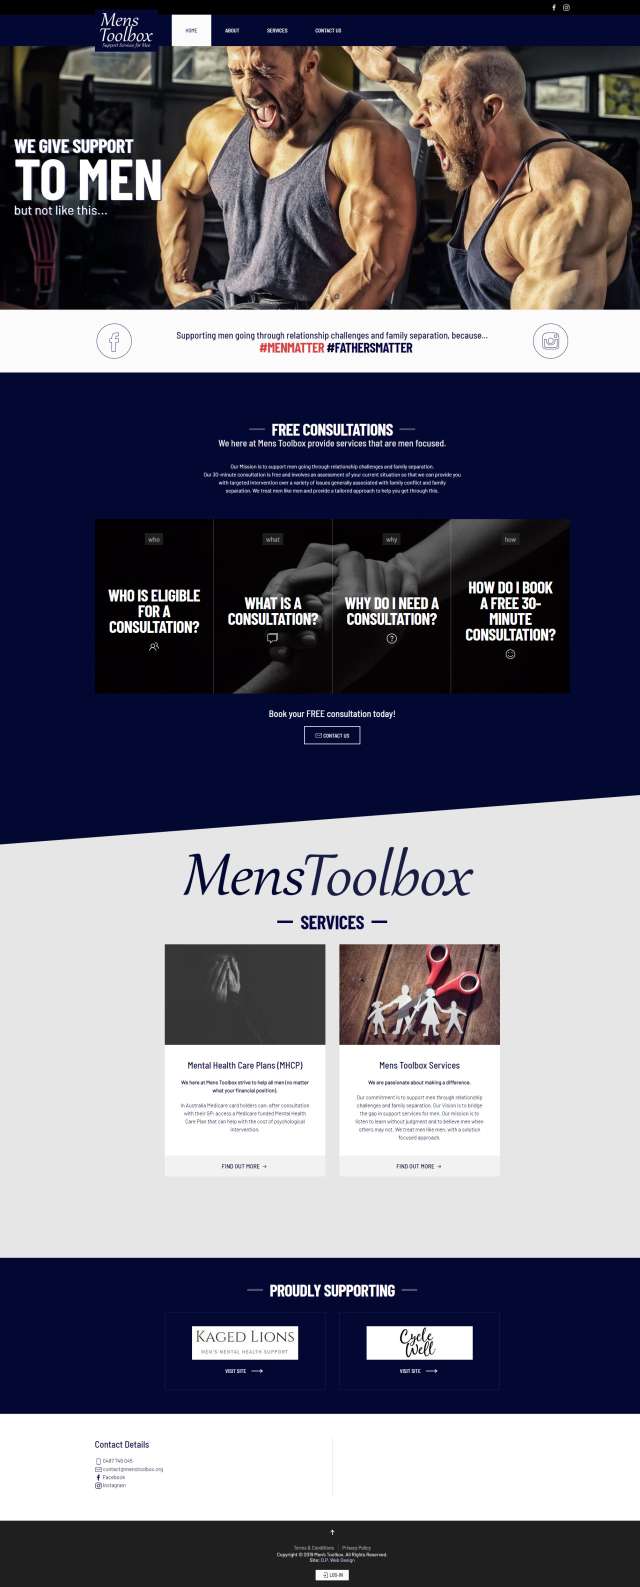 images/portfolio/Joomla/menstoolbox//menstoolbox-001.jpg